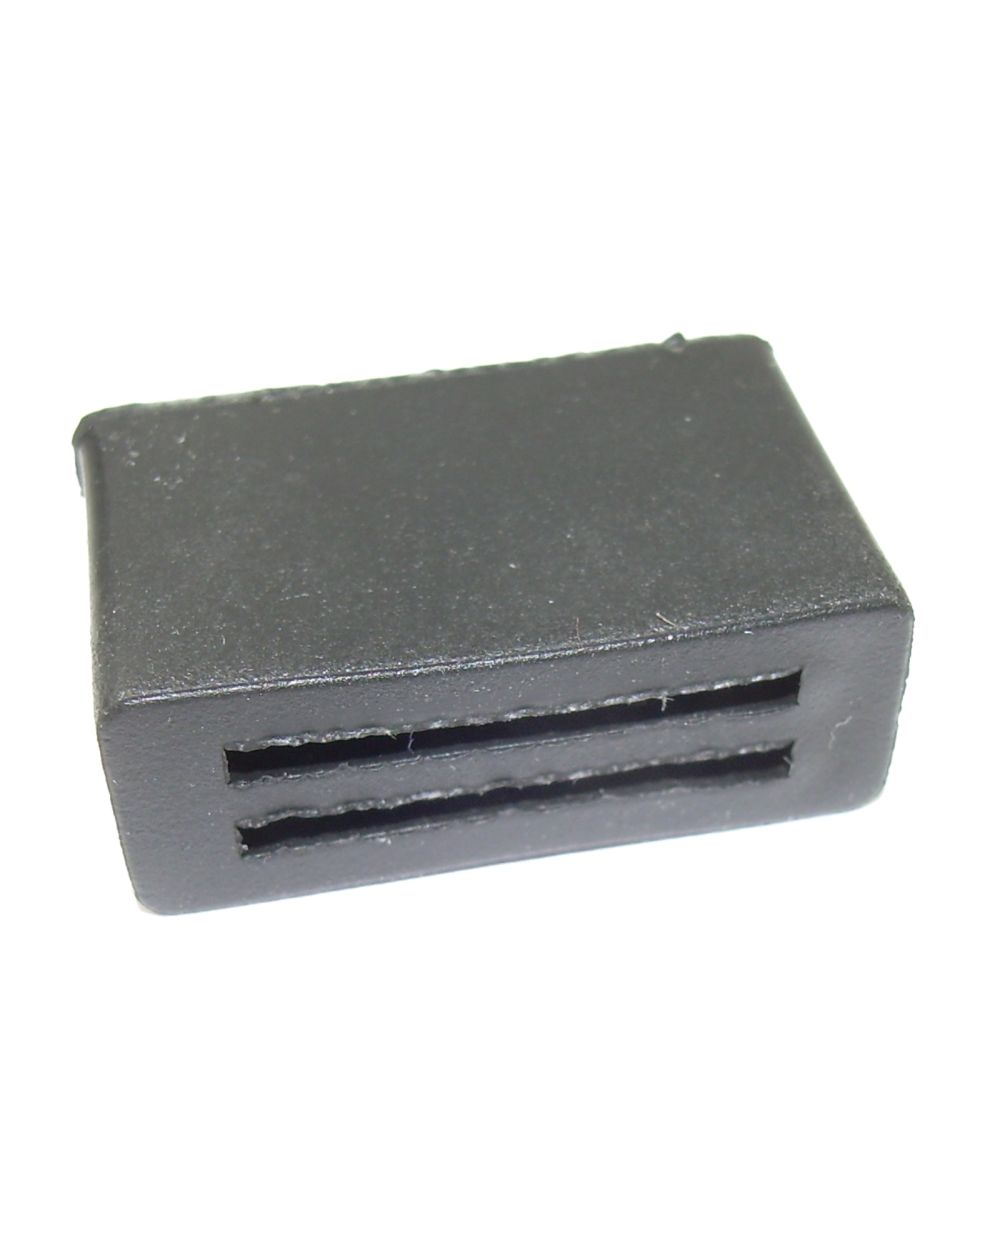 Gummi-Halter für Blinkrelais (zur Montage an rahmenfester Haltelasche),  Maße L x B x H ca. 24 x14,5 x 9 mm